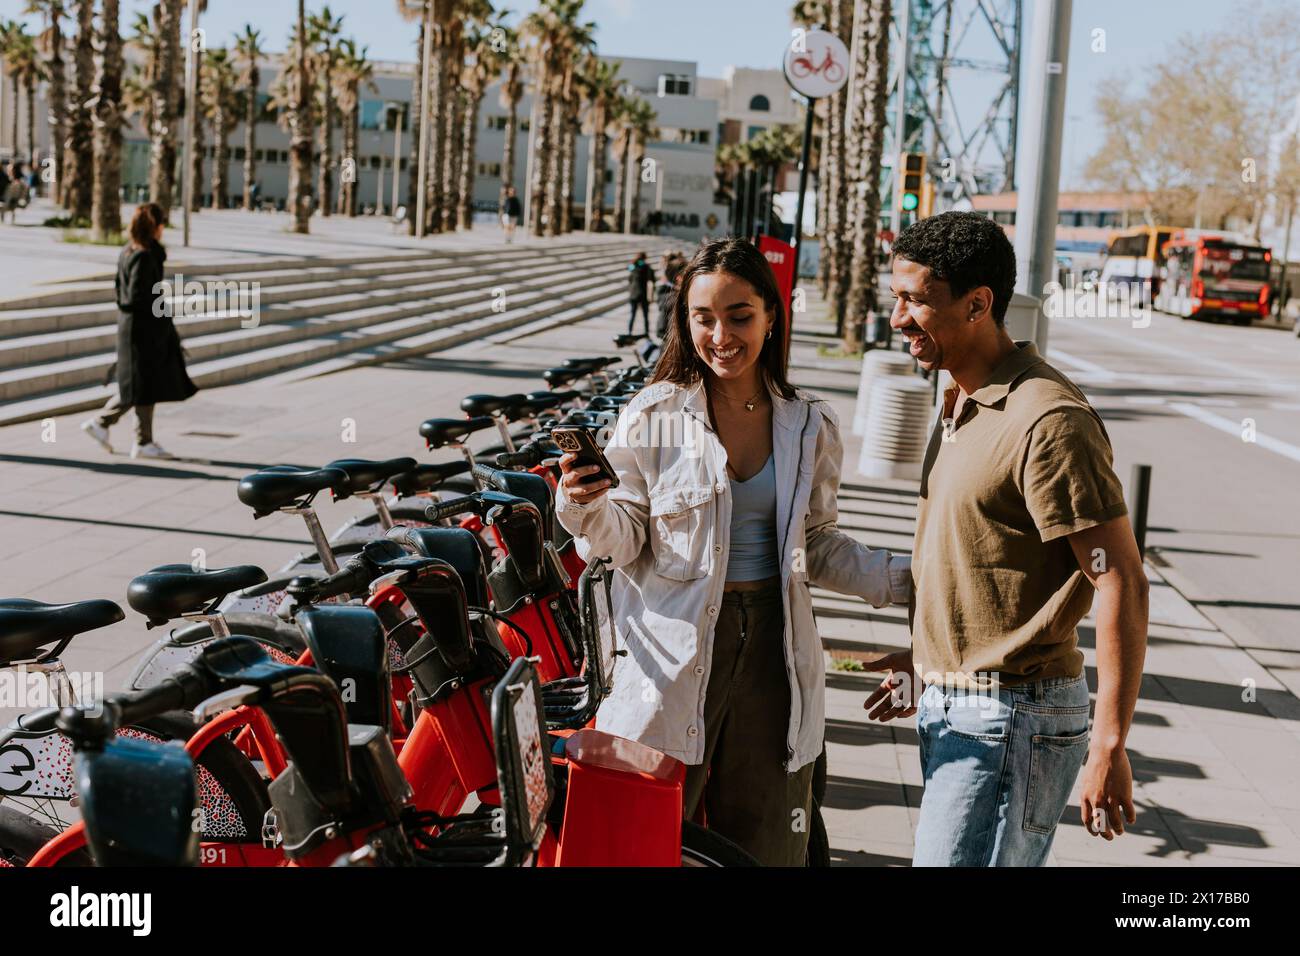 Jeune couple profitant d'une journée venteuse en choisissant des vélos d'une station de location à Barcelone. Banque D'Images